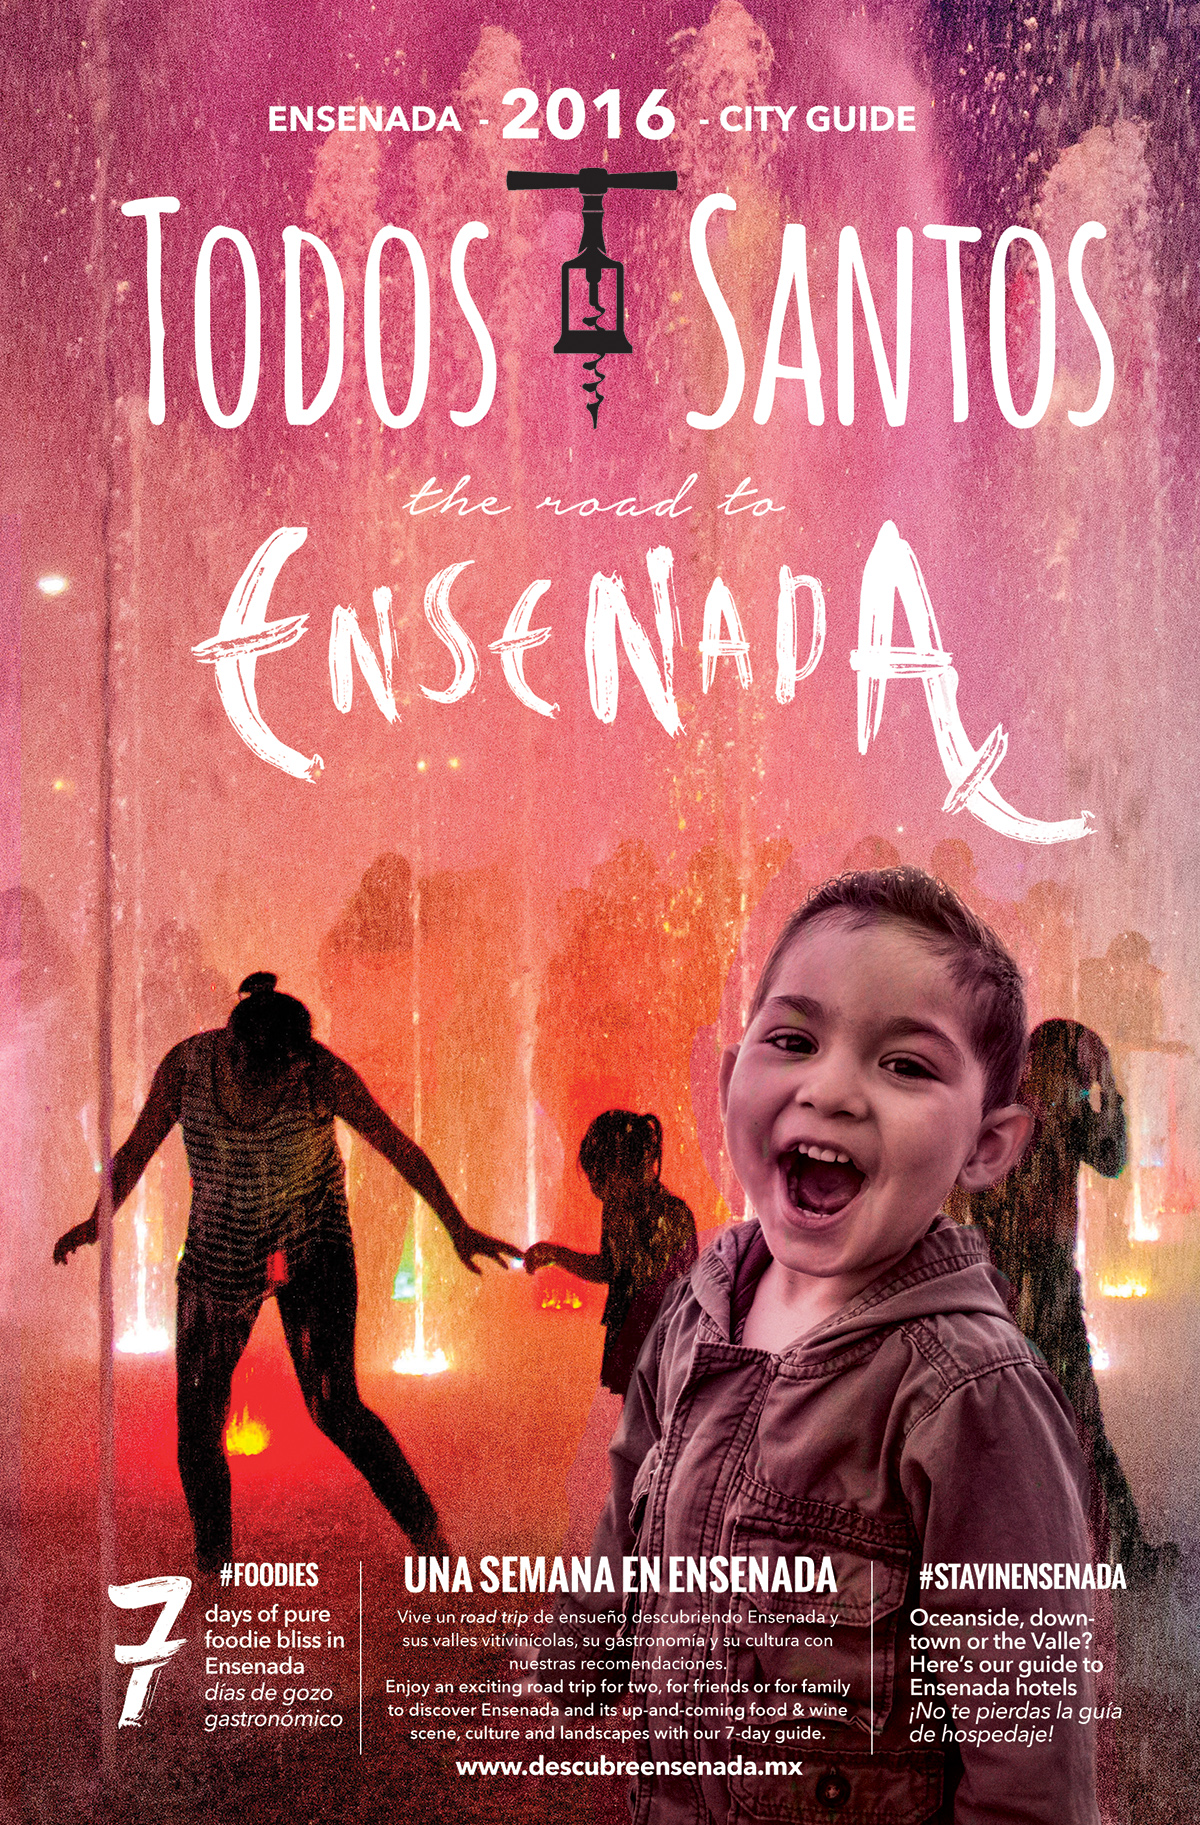 TODOS SANTOS- THE ROAD TO ENSENADA